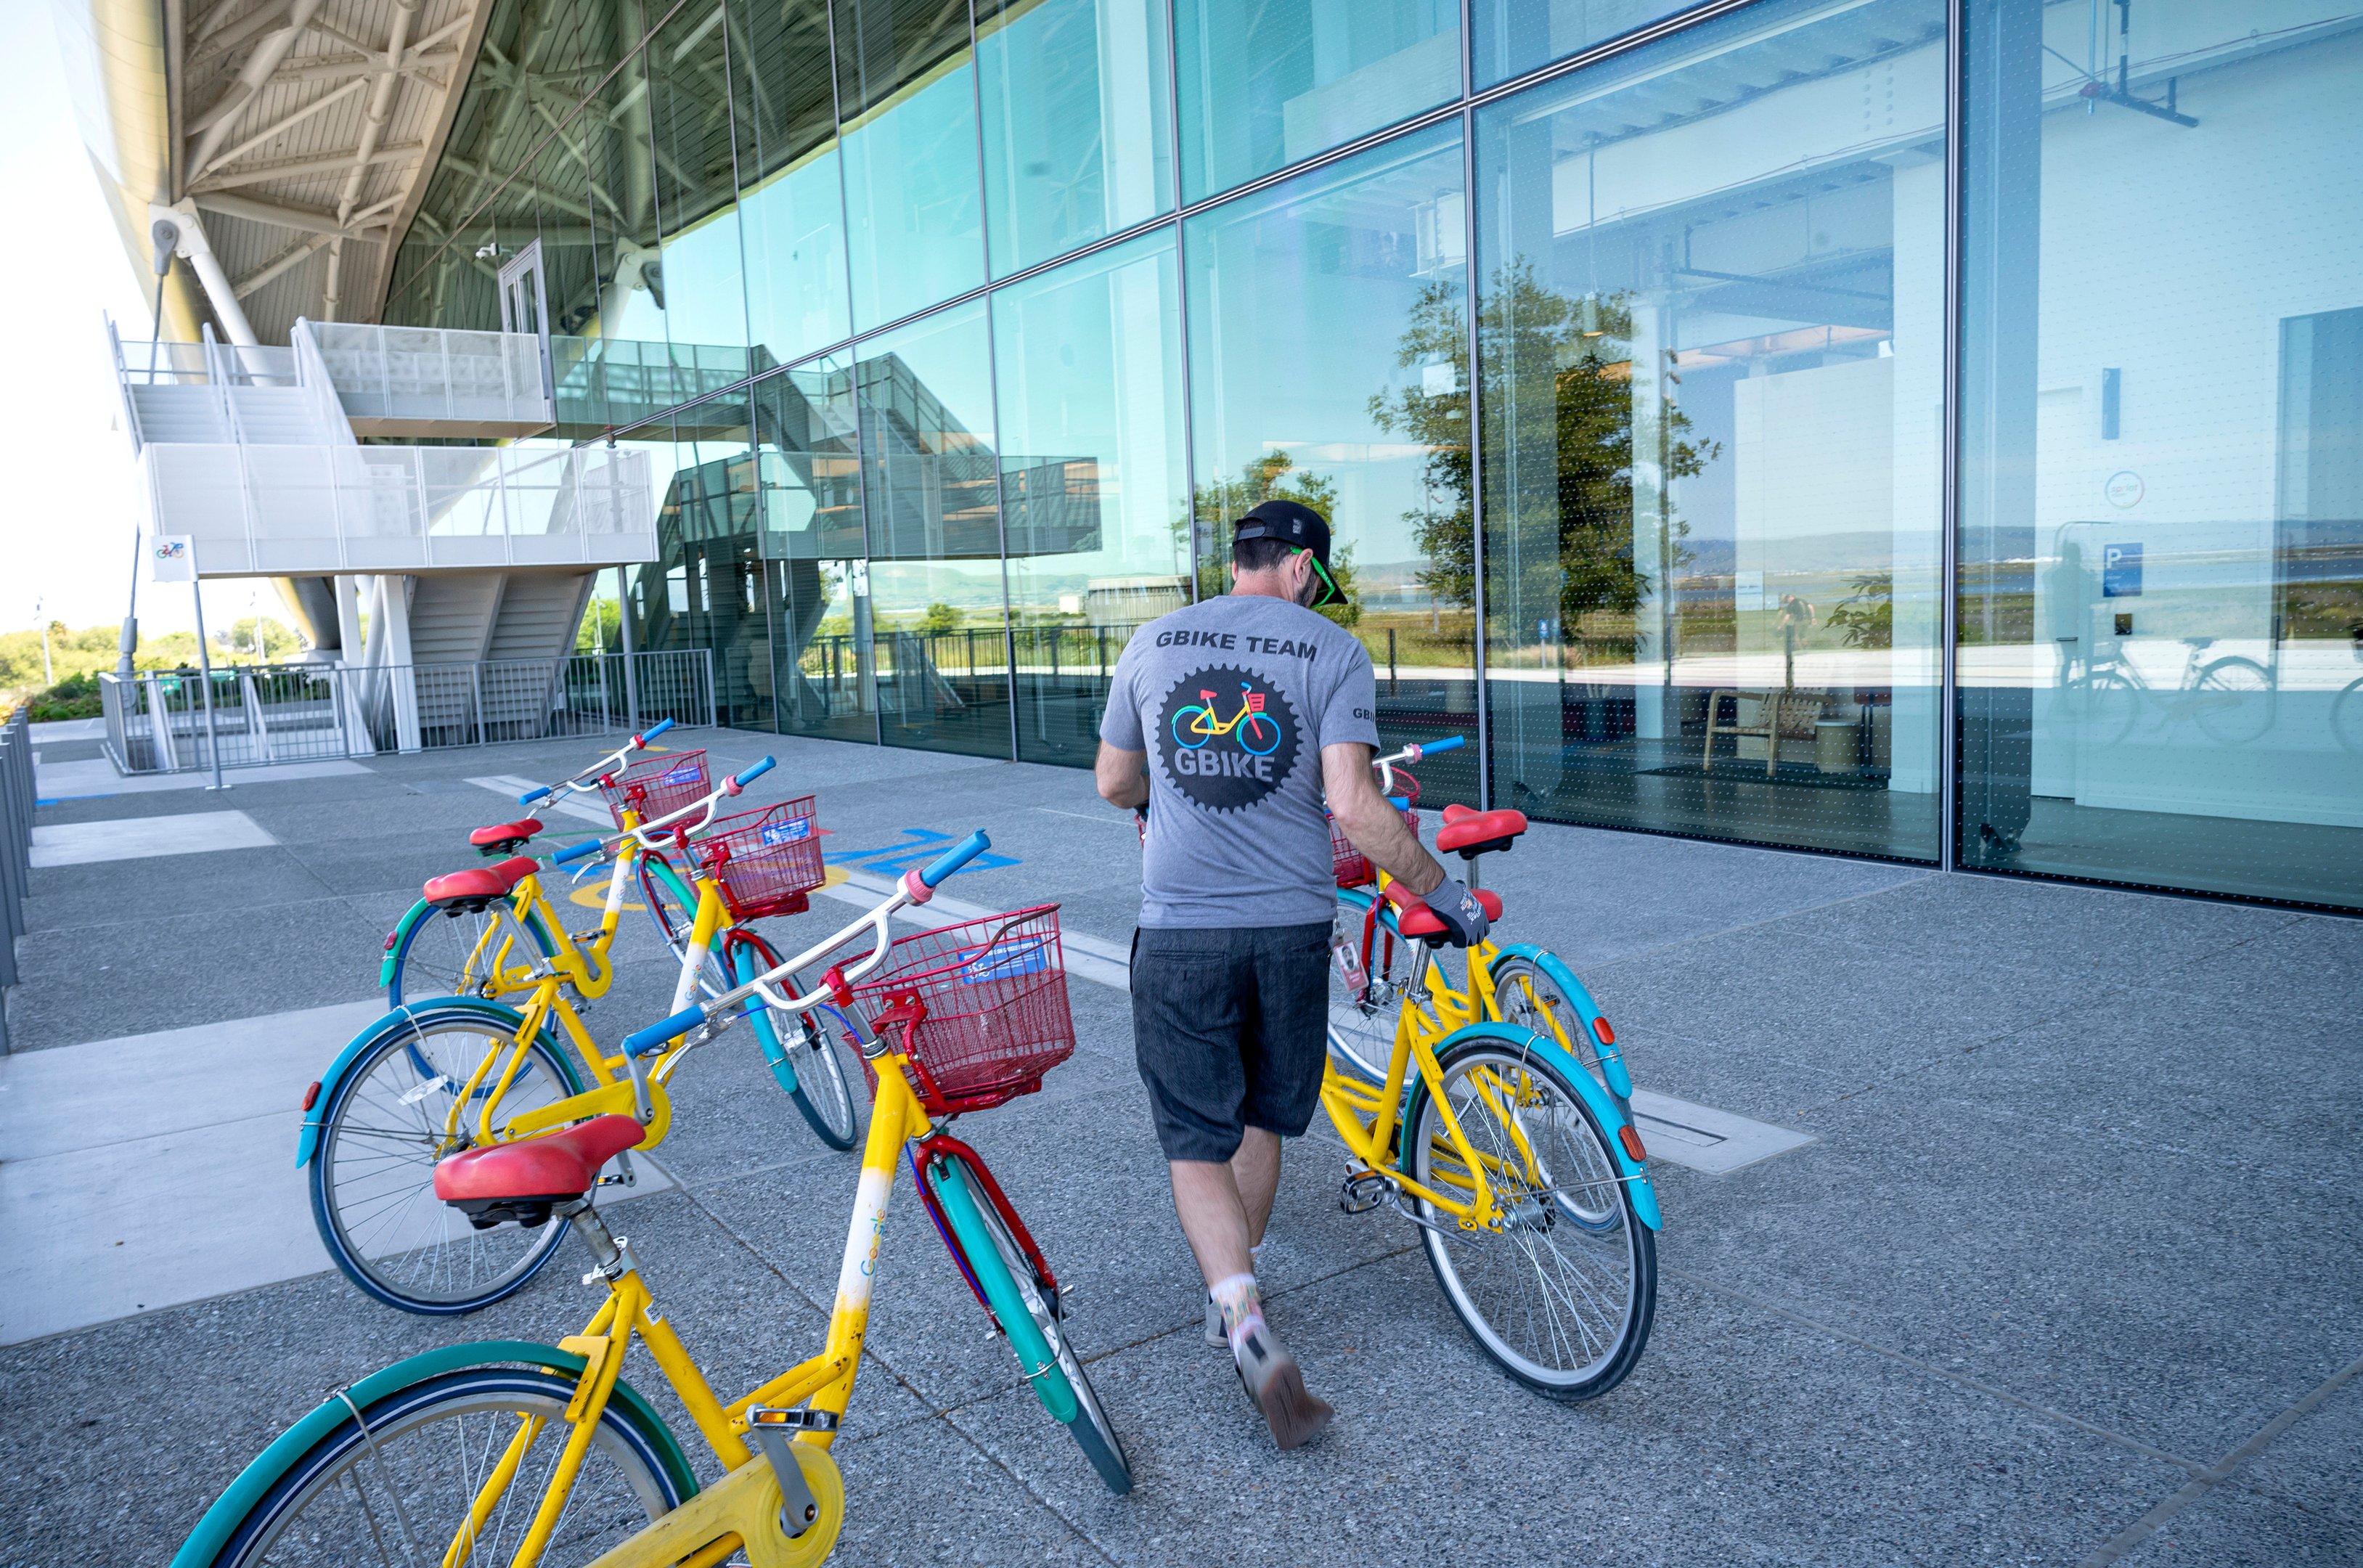 A sede possui uma infraestrutura verde avançada, com painéis solares e sistemas de reutilização de água, reafirmando o compromisso do Google com a sustentabilidade ambiental.  As bicicletas, claro, são um meio de transporte incentivado pela companhia.
